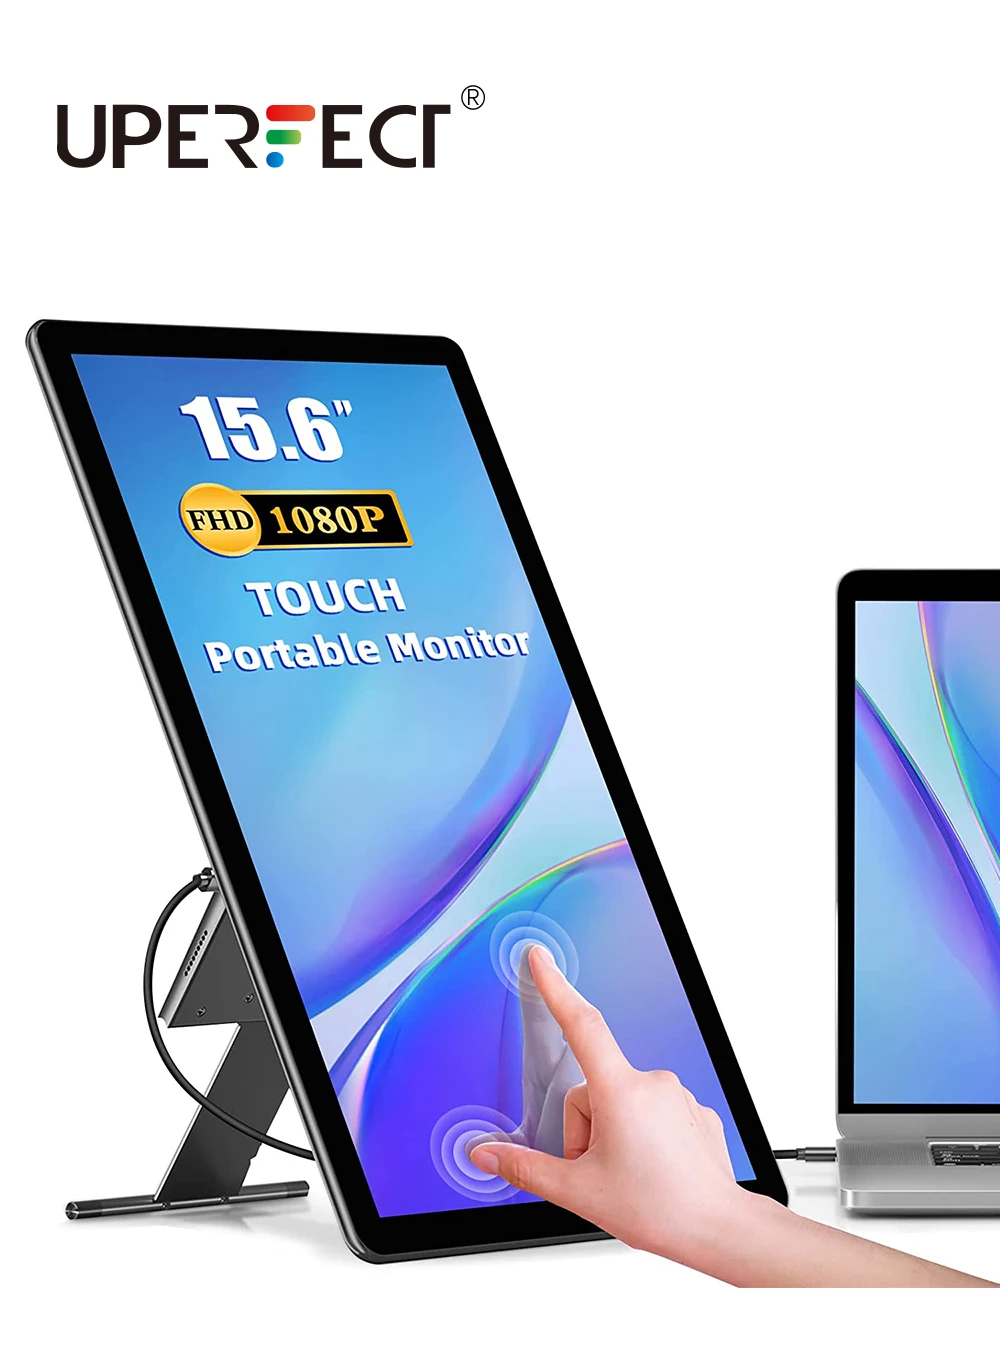 UPERFECT Touchscreen Monitor portatile 15.6 ''HDR 1080P IPS Raspberry Pi  VESA HDMI VGA DVI ingresso industriale 2000:1 rapporto di contrasto -  AliExpress